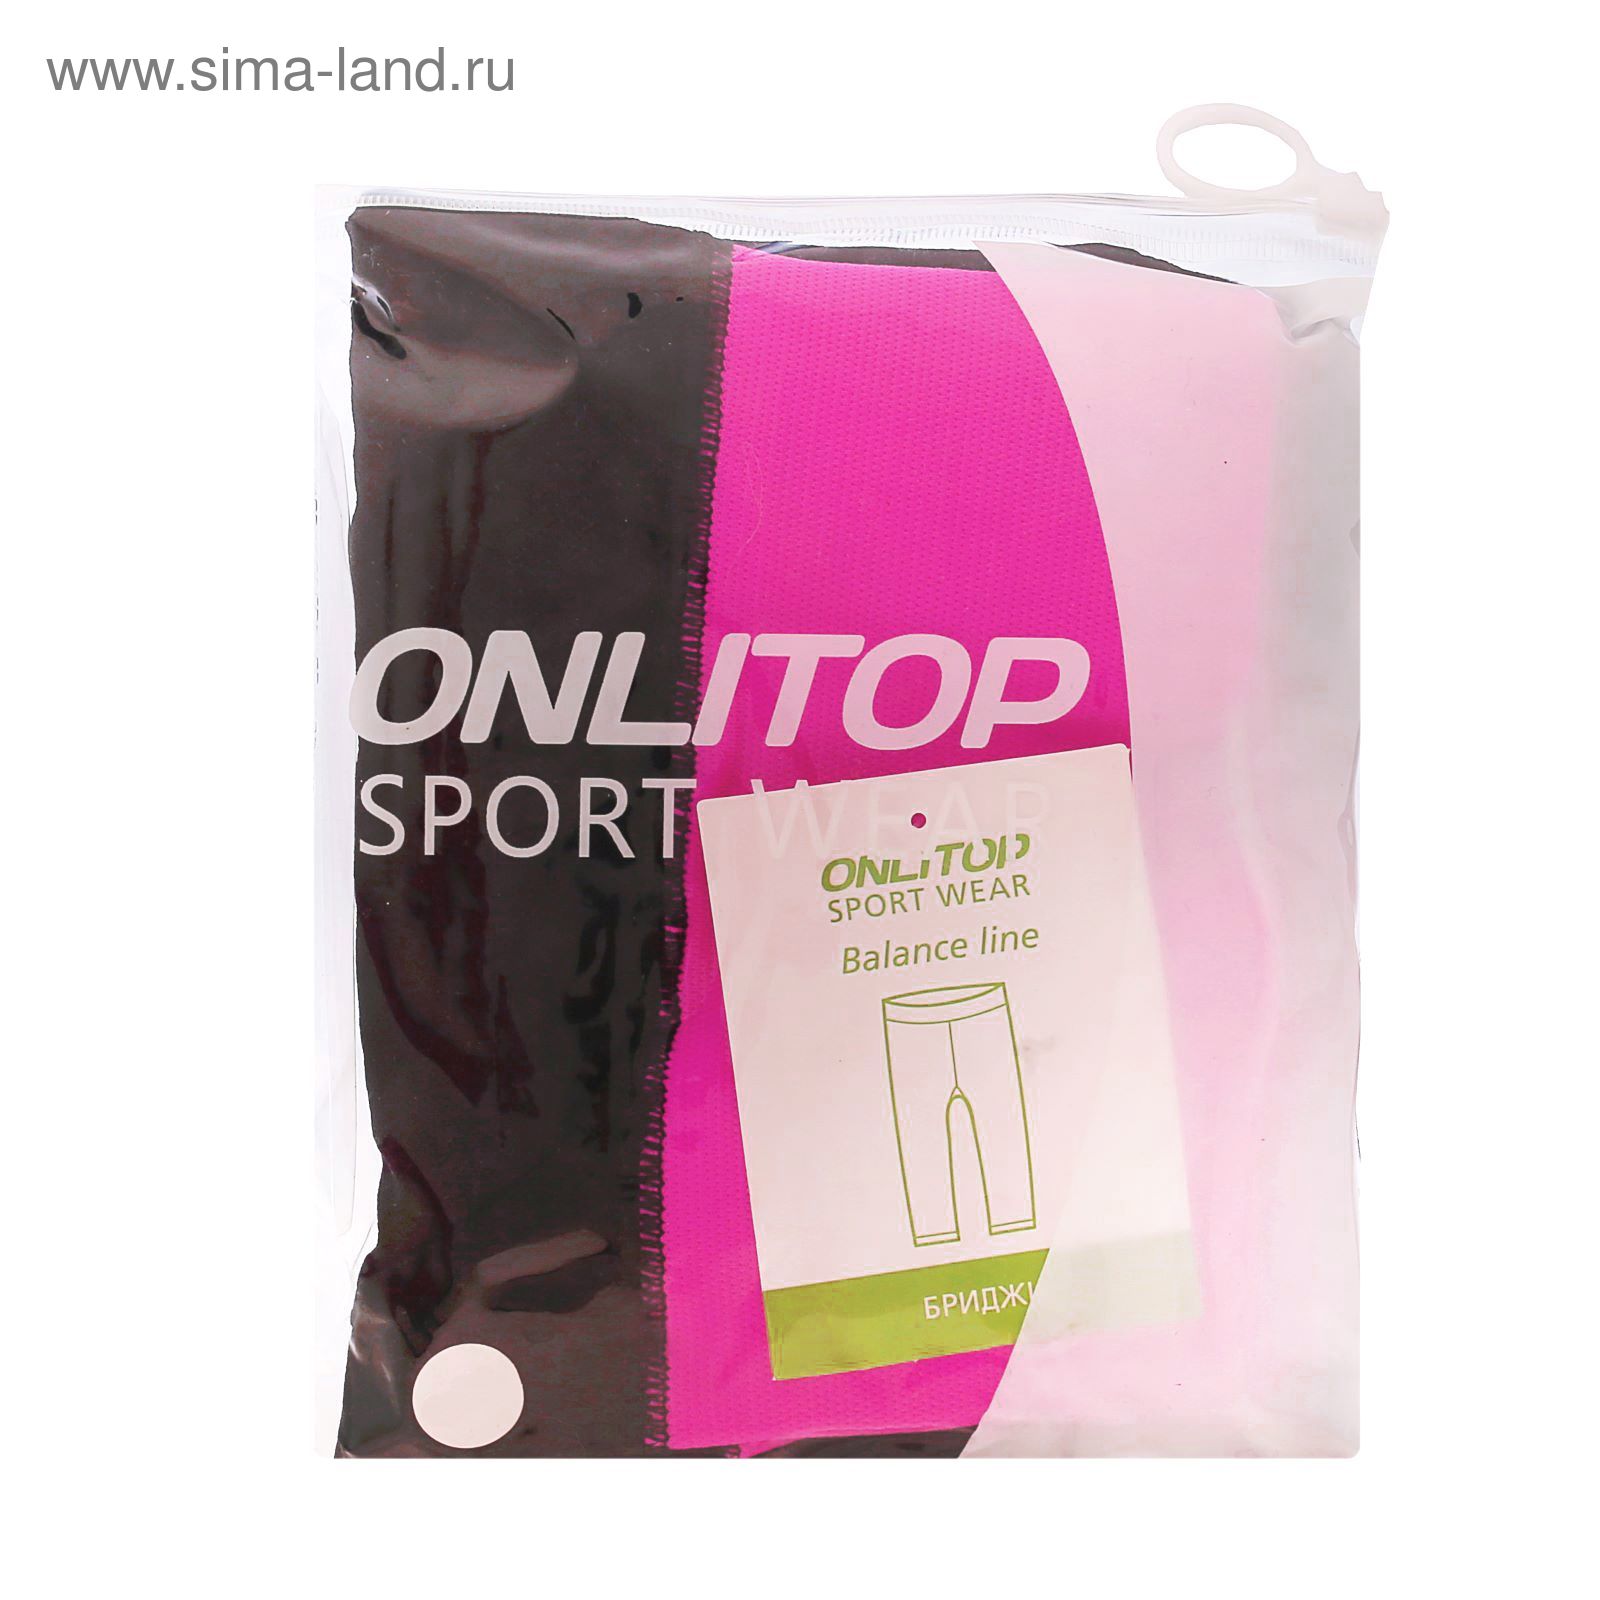 Спортивные бриджи ONLITOP Balance rose, размер S-M (42-44)